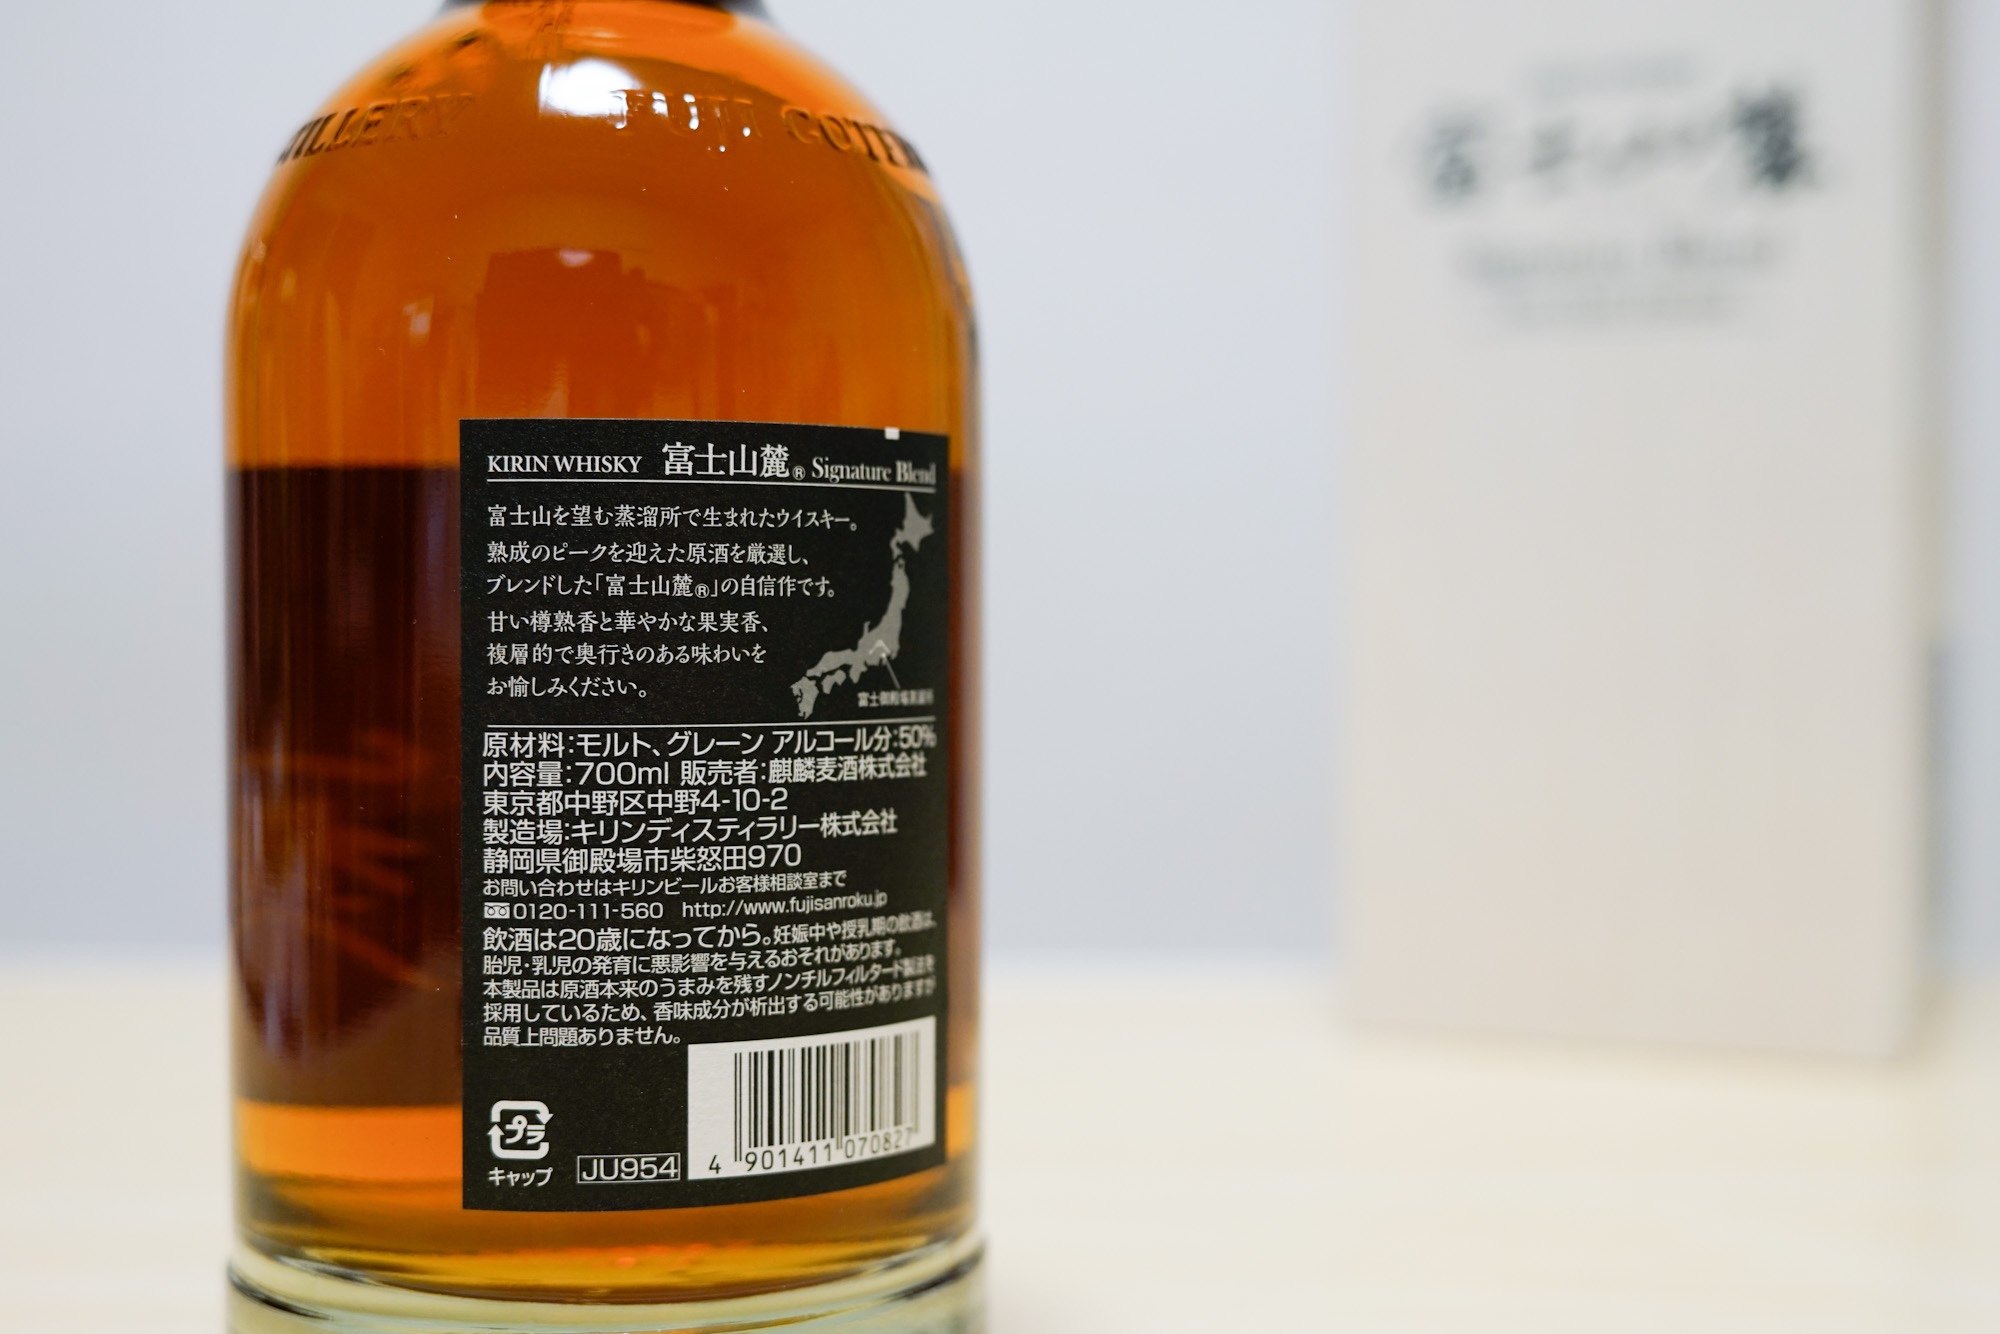 【富士山麓シグネチャーブレンド】終売になった樽熟原酒50度の上位版の評価とは！？ | ぽよんちょおじさんのエエ事おしえたる。